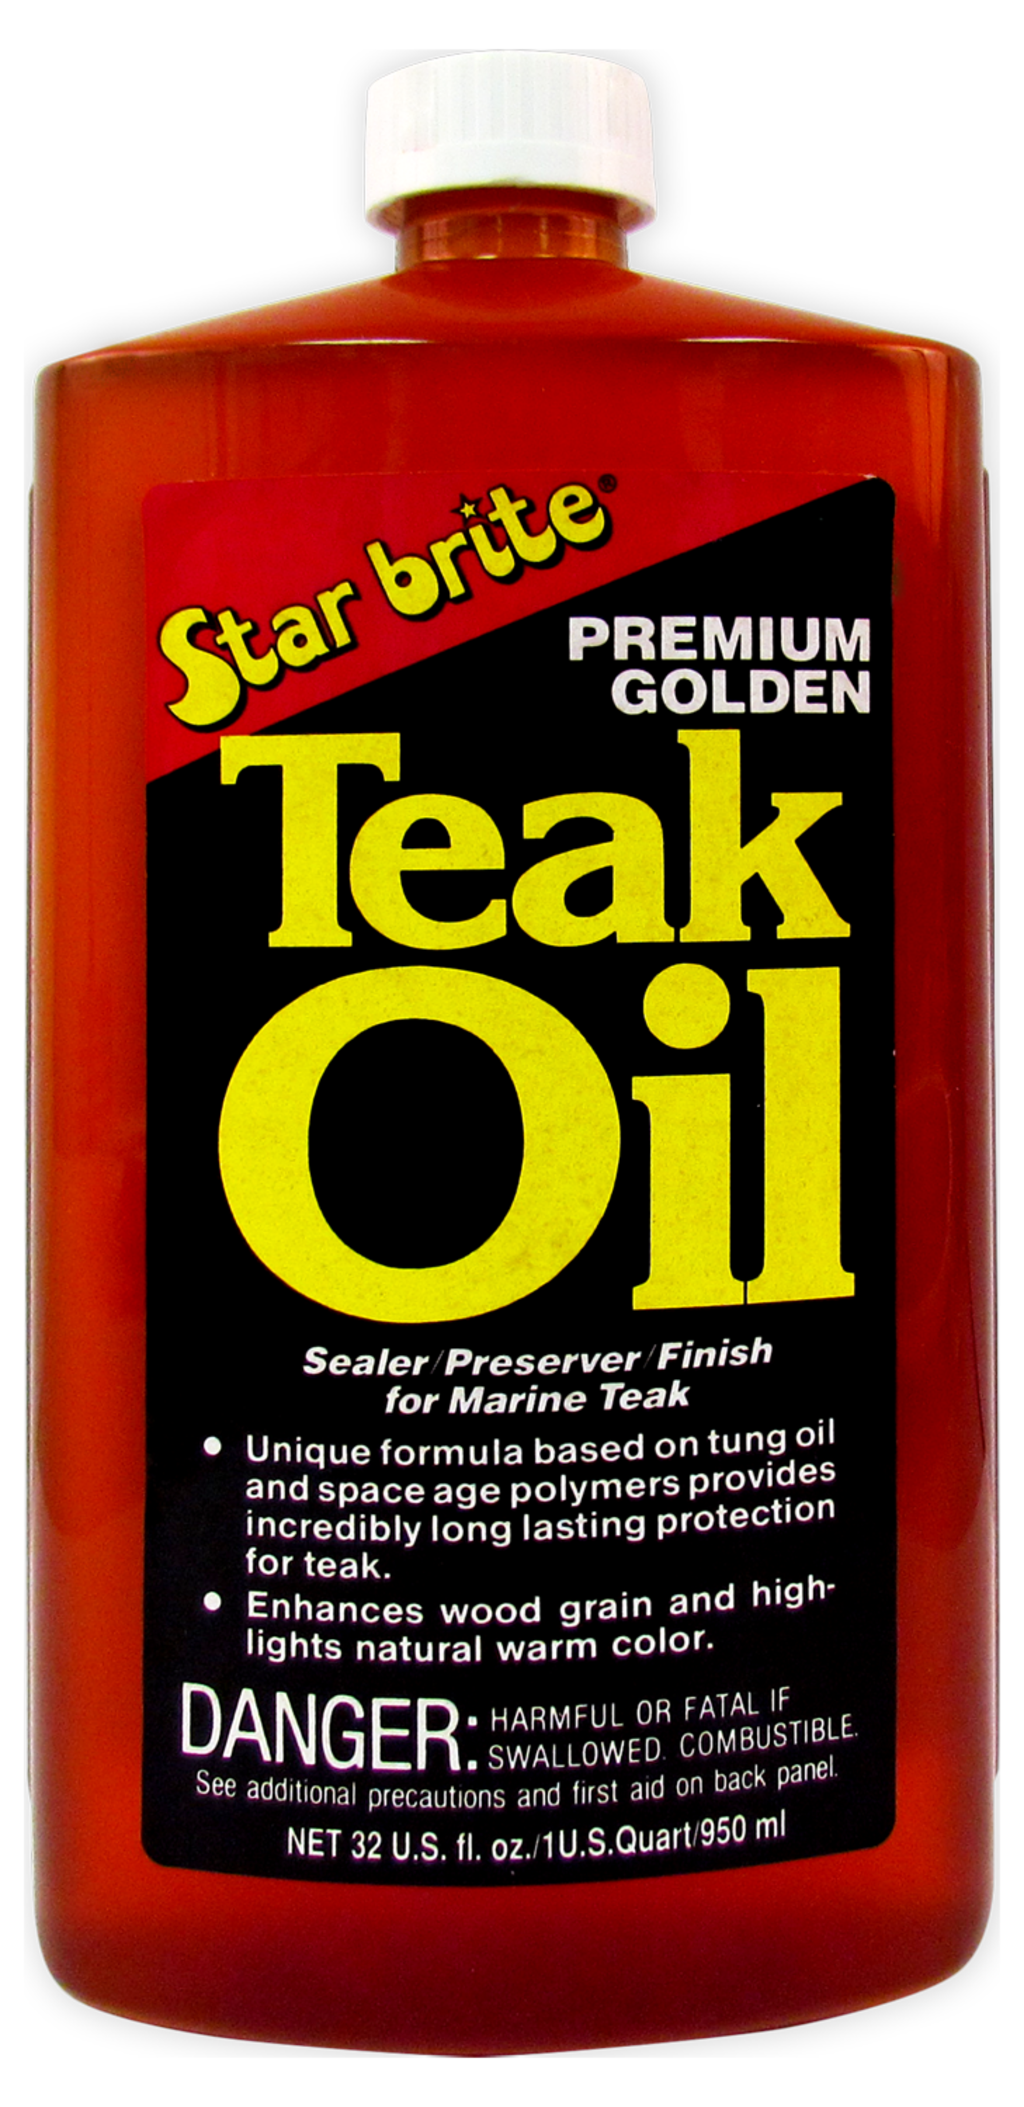 Starbrite Premium Teak Oil